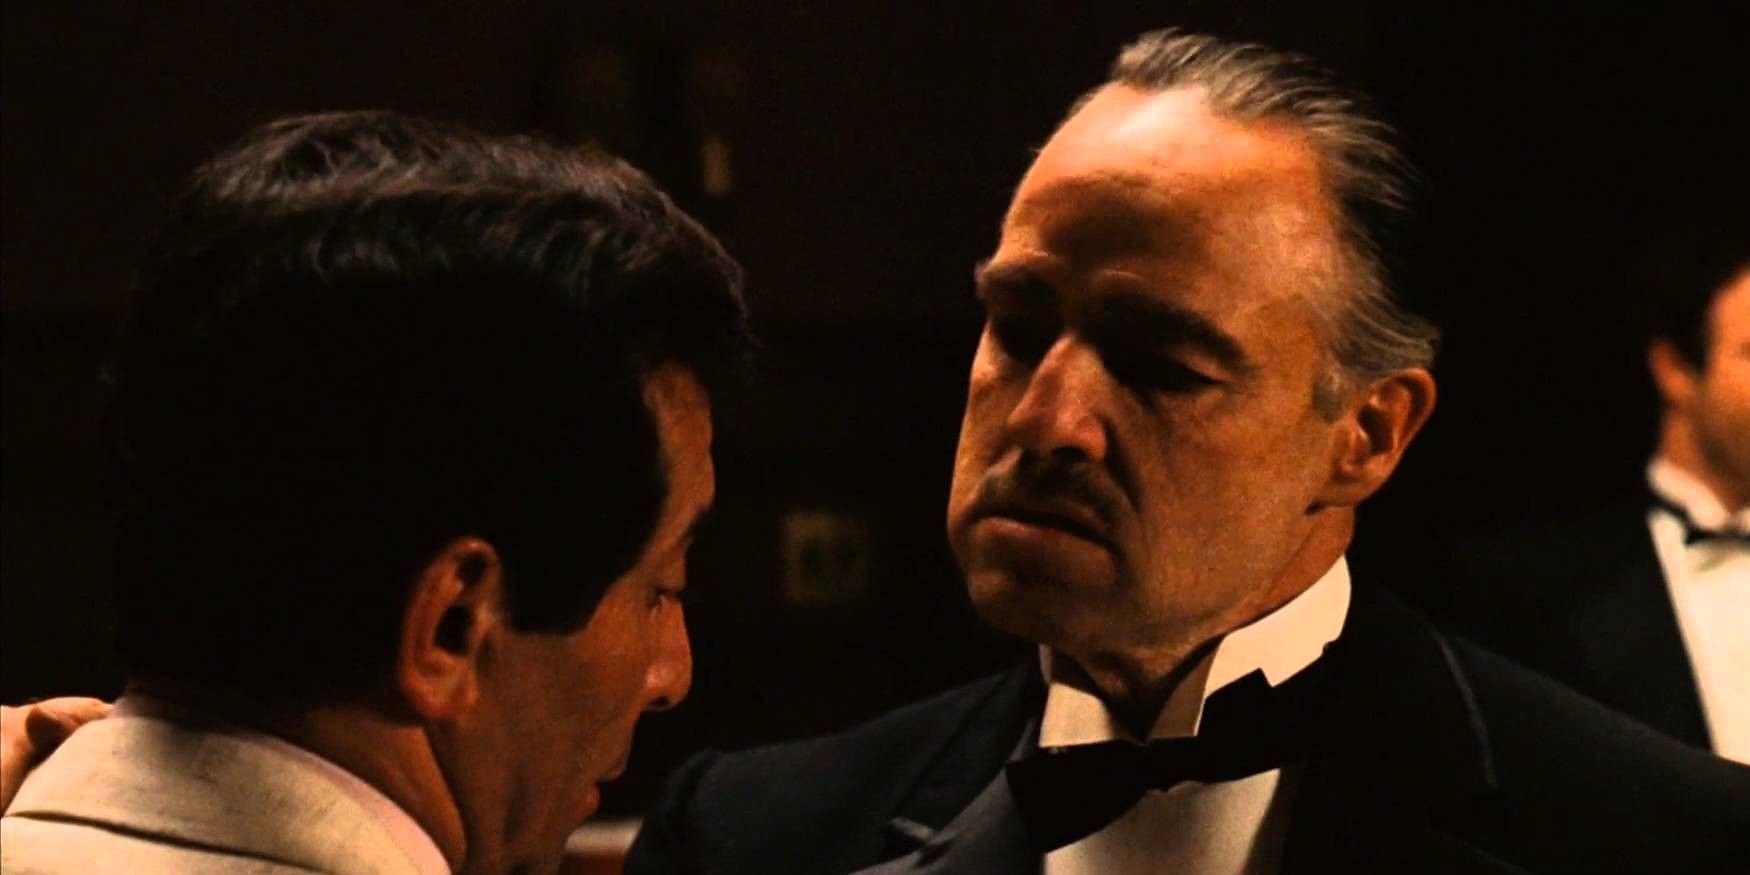 Al Martino as Johnny Fontane and Marlon Brando as Don Vito Corleone in The Godfather